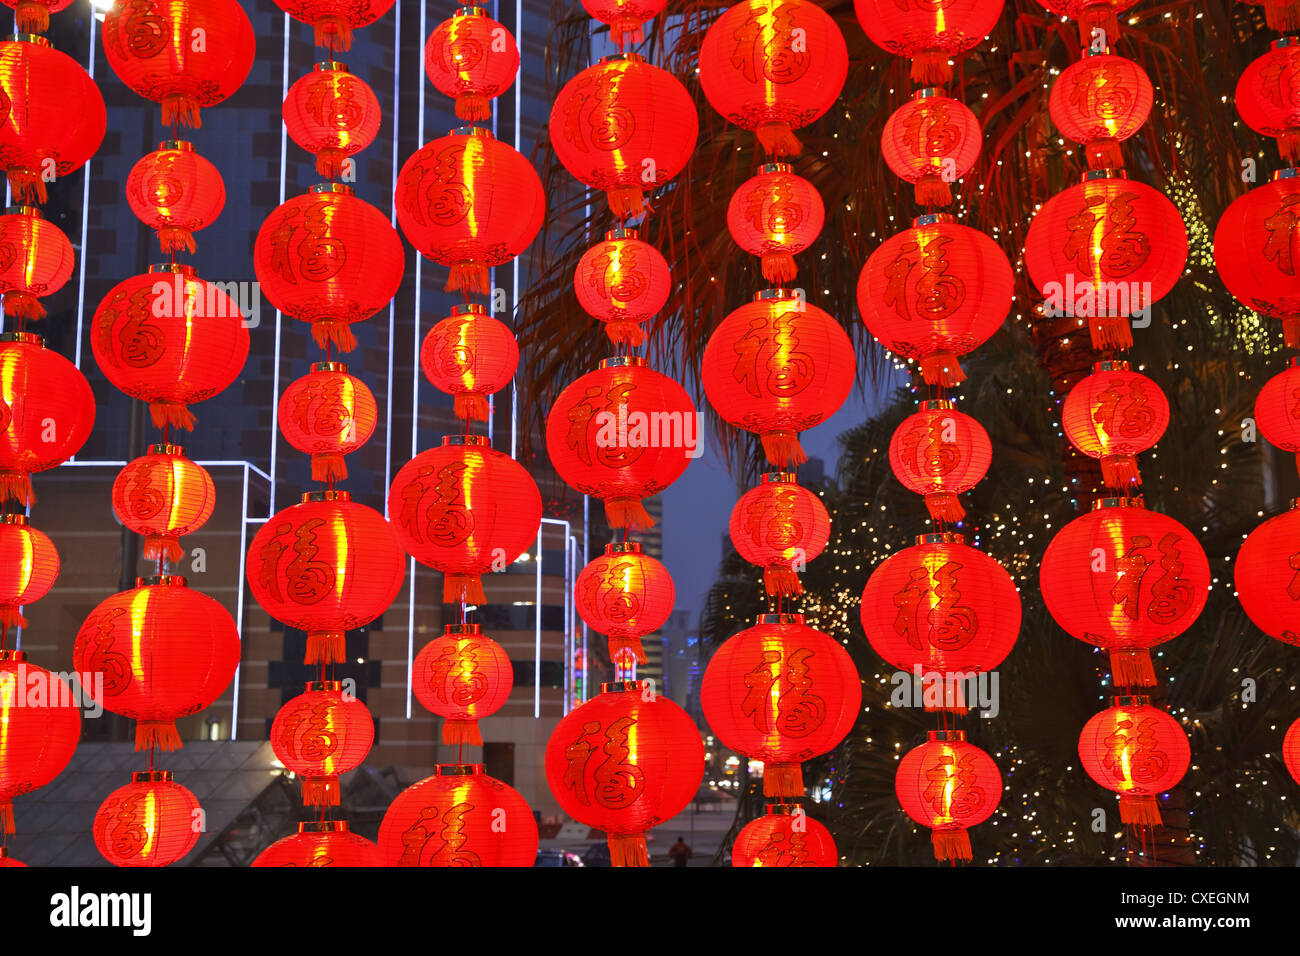 Las ornamentadas lámparas pequeñas rojas decorativas Foto de stock